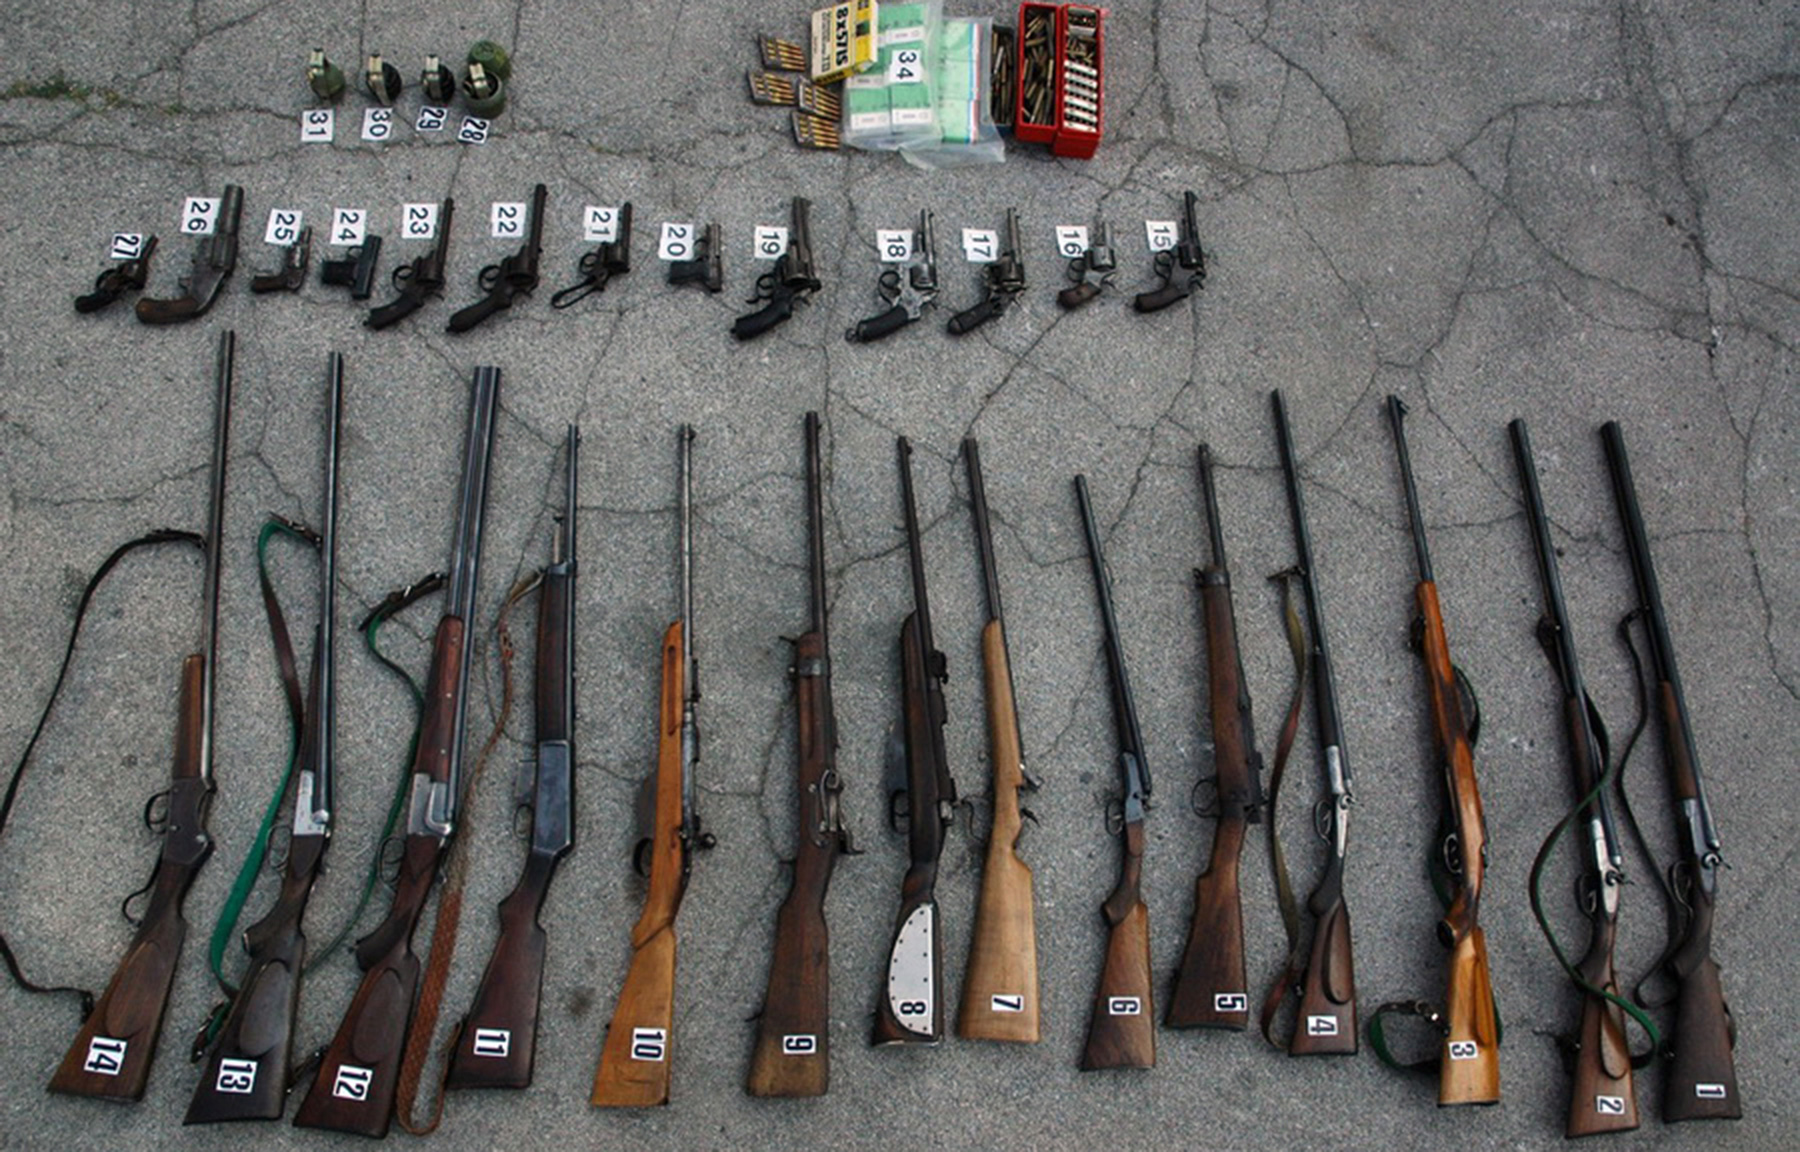 Policija je u pretresu porodične kuće pronašla veću količinu oružja i municije